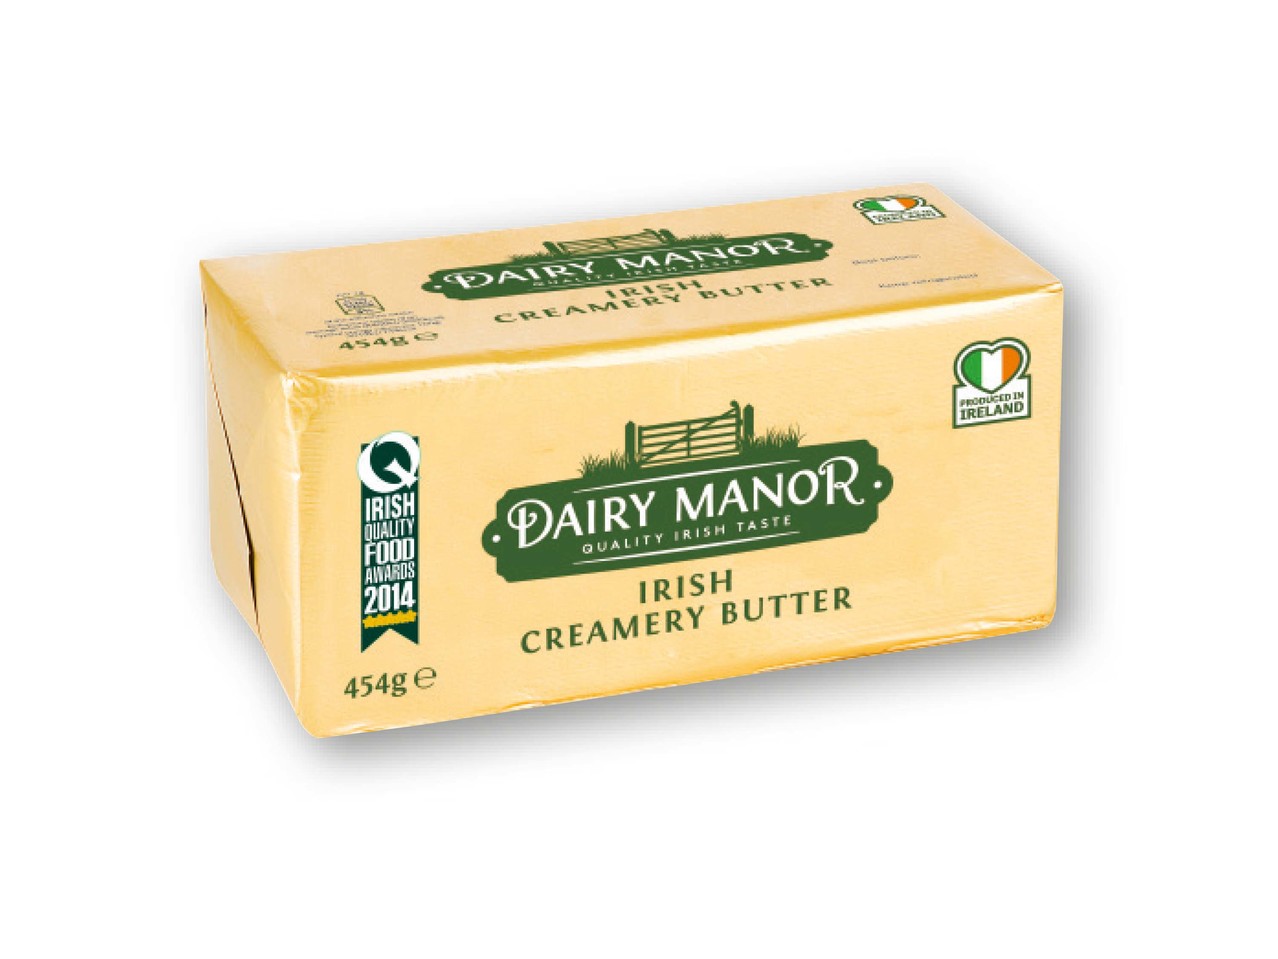 Dairy Manor IRISH CREAMERY BUTTER